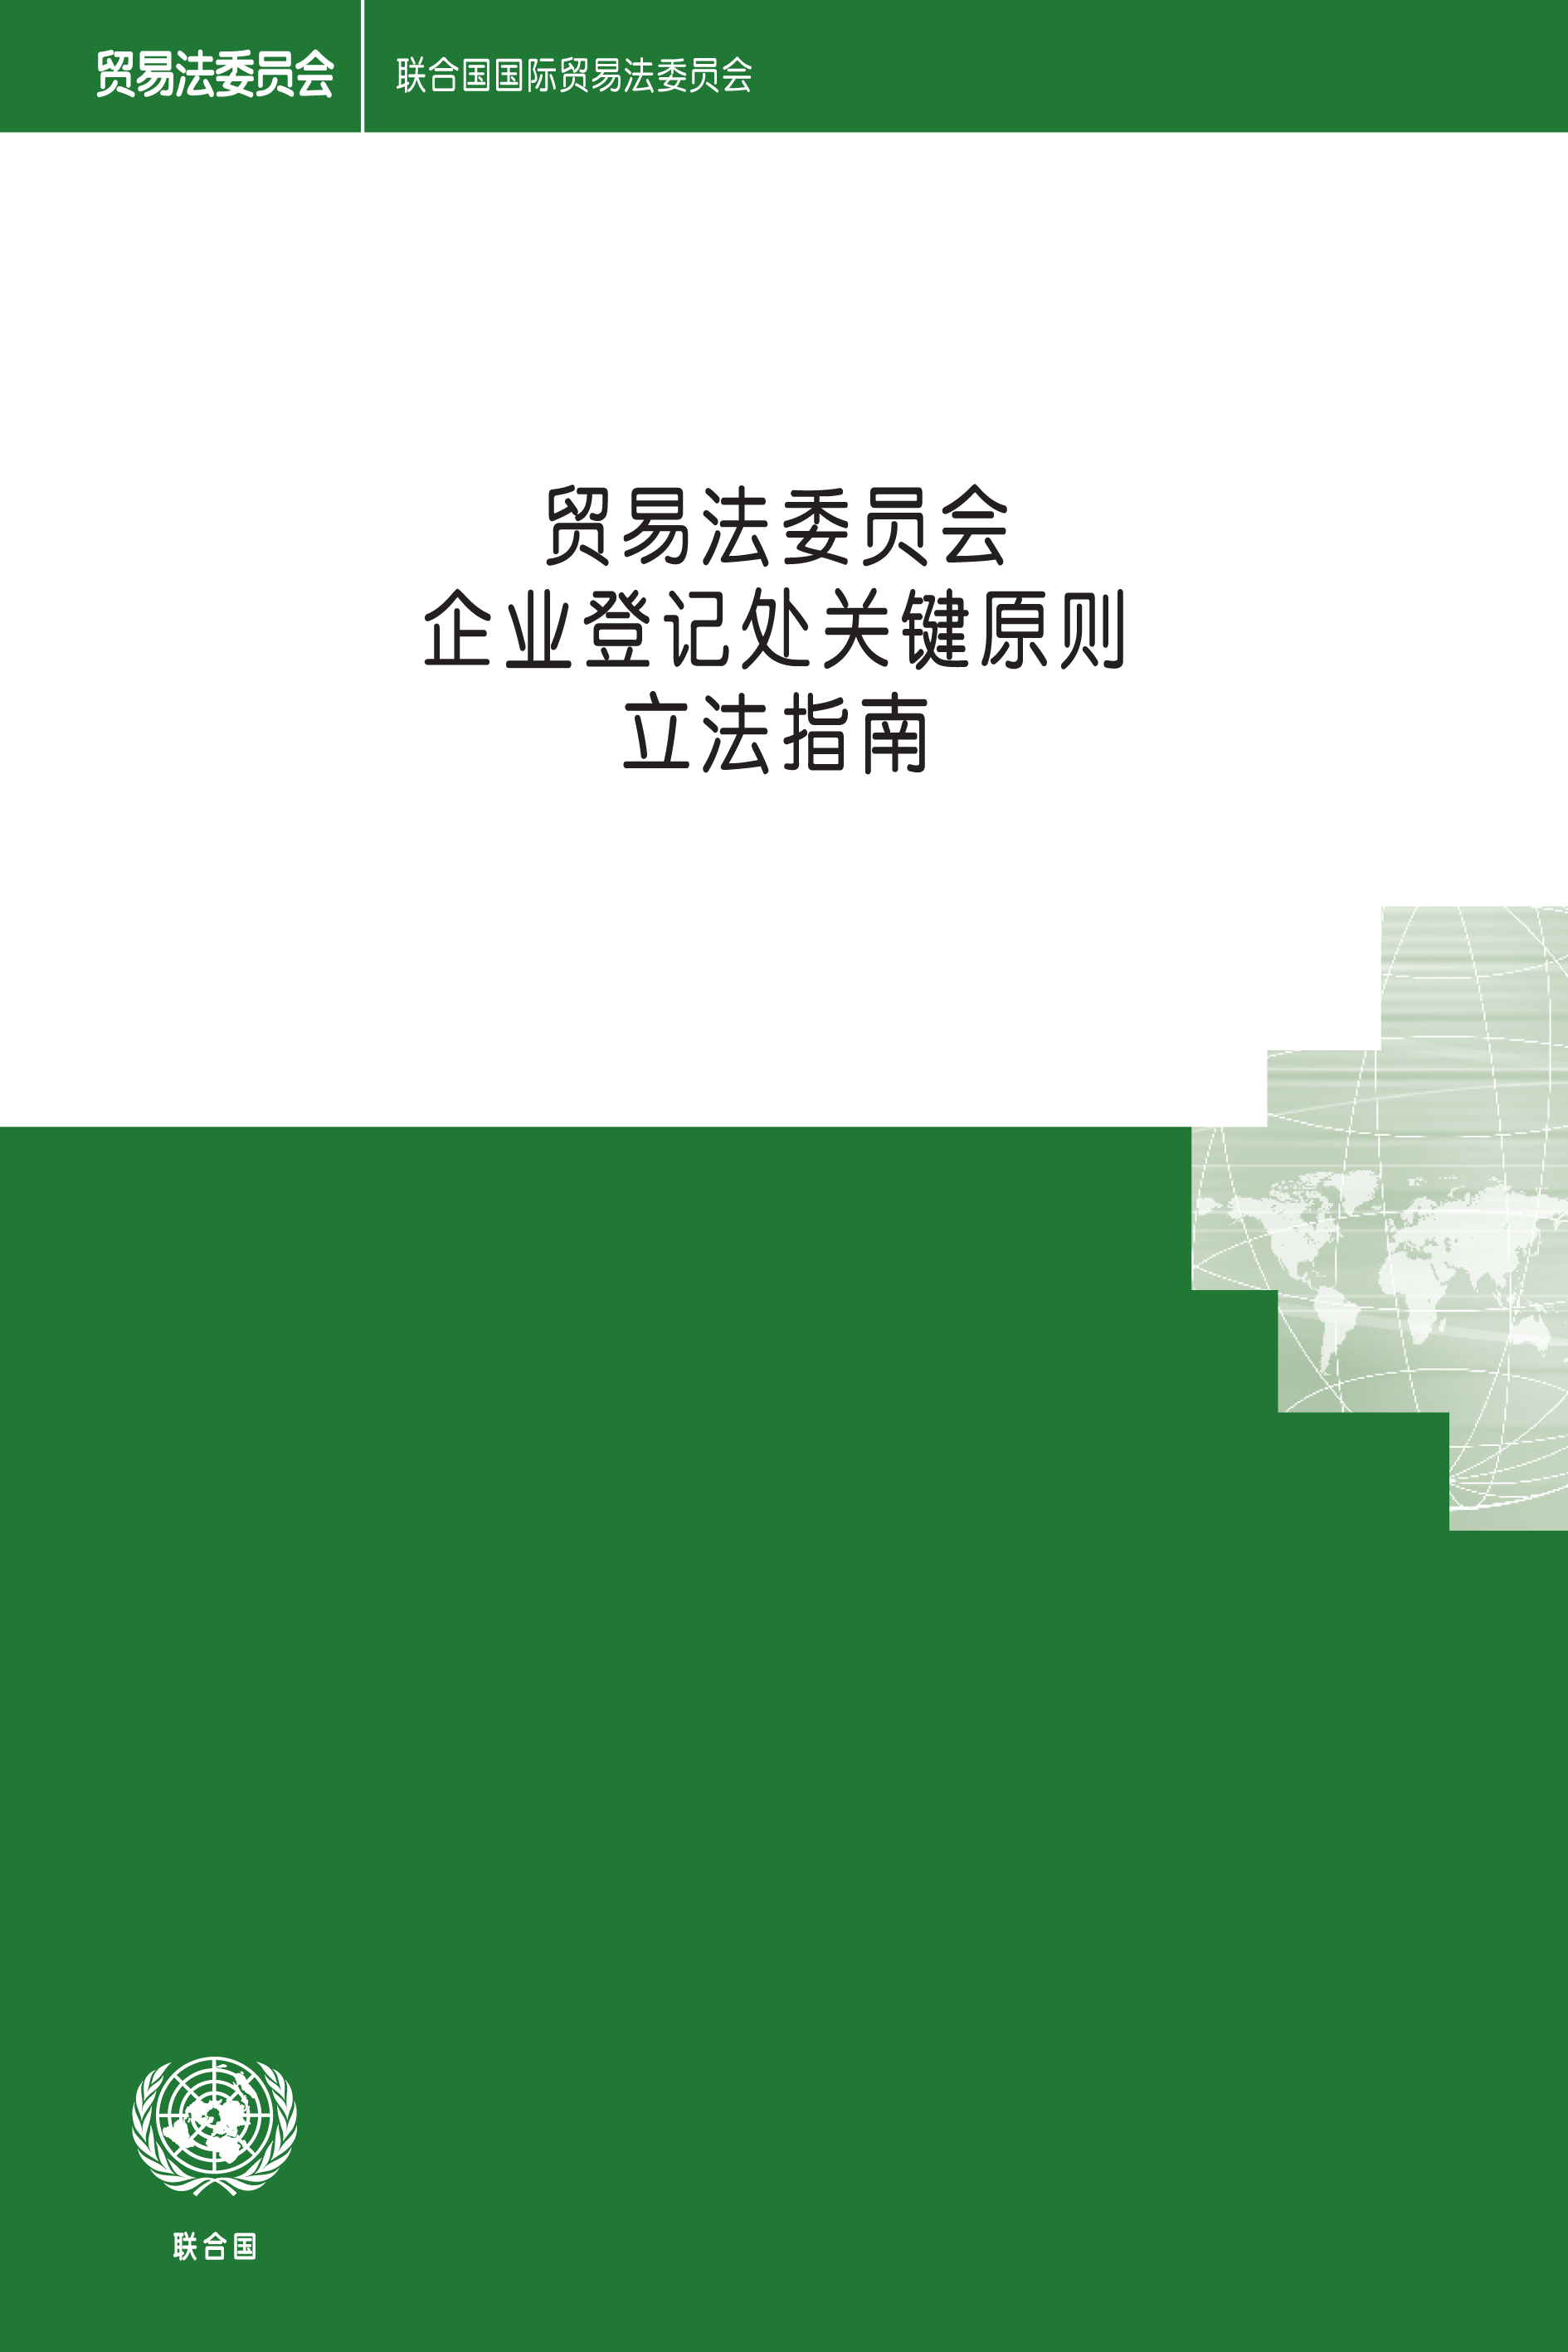 image of 贸易法委员会企业登记处关键原则立法指南